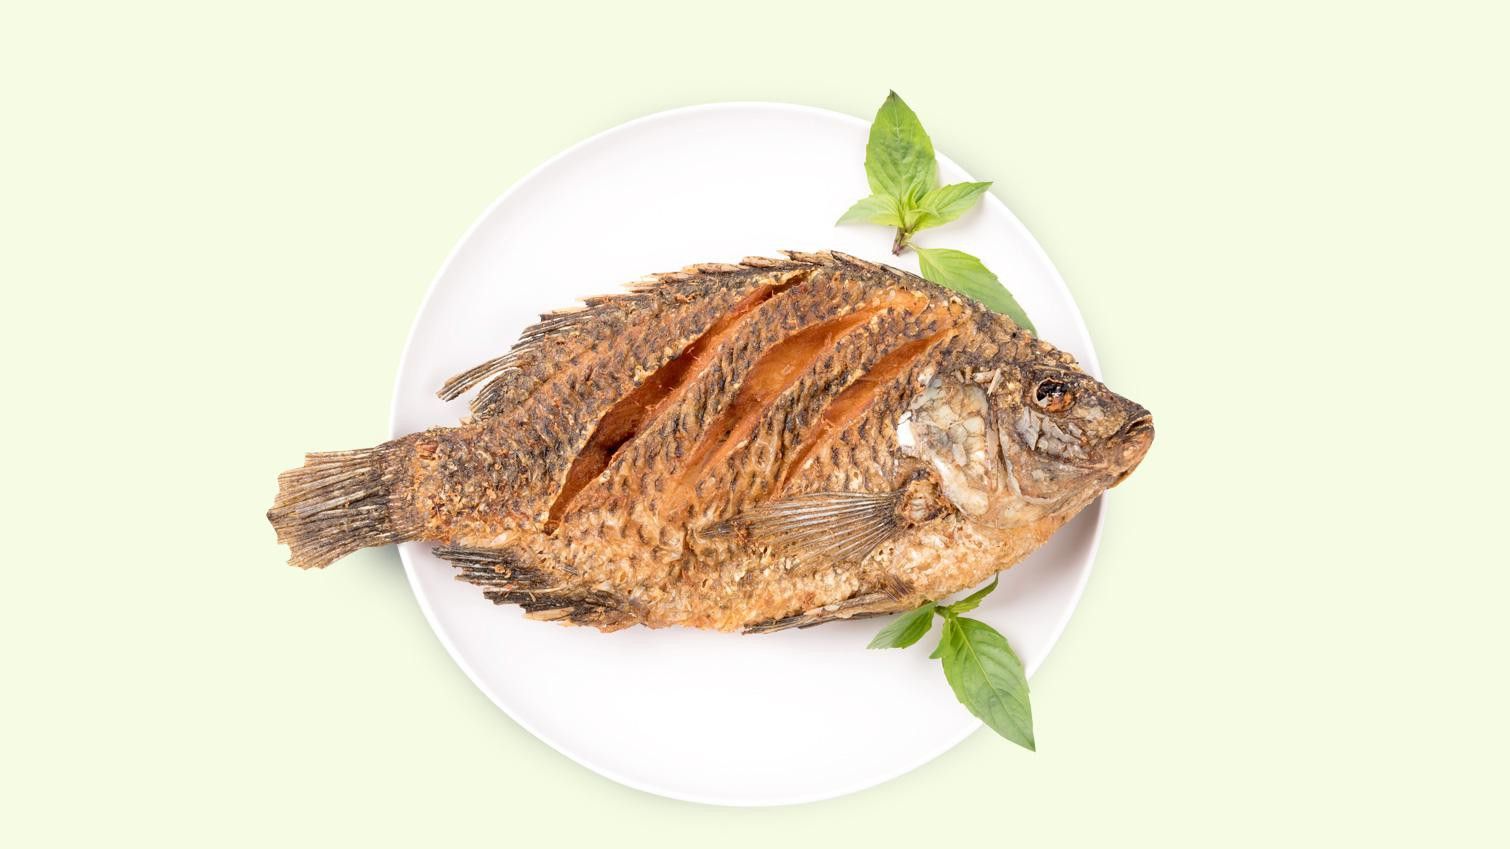 Lezat dan Sering Dikonsumsi, Padahal 5 Jenis Ikan Ini Punya Fakta Menyeramkan